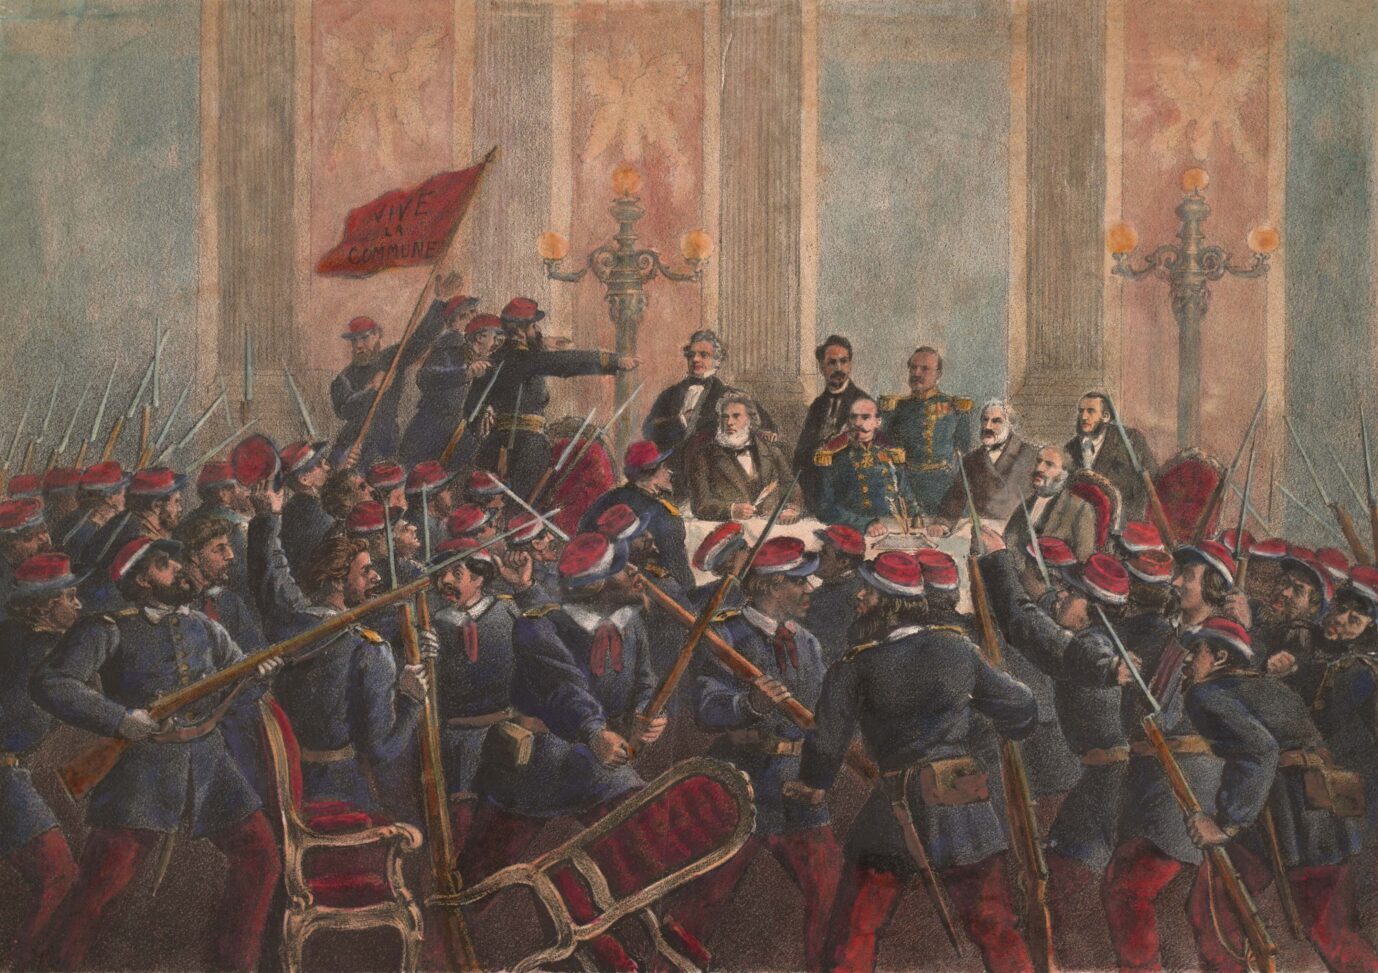 1871 stürmen die Kommunarden den Kabinettssaal der französischen Regierung Georges Sorel sah in solchen Revolten den Ausdruck einer lebendigen Gesellschaft Foto: picture-alliance / akg-images | akg-images